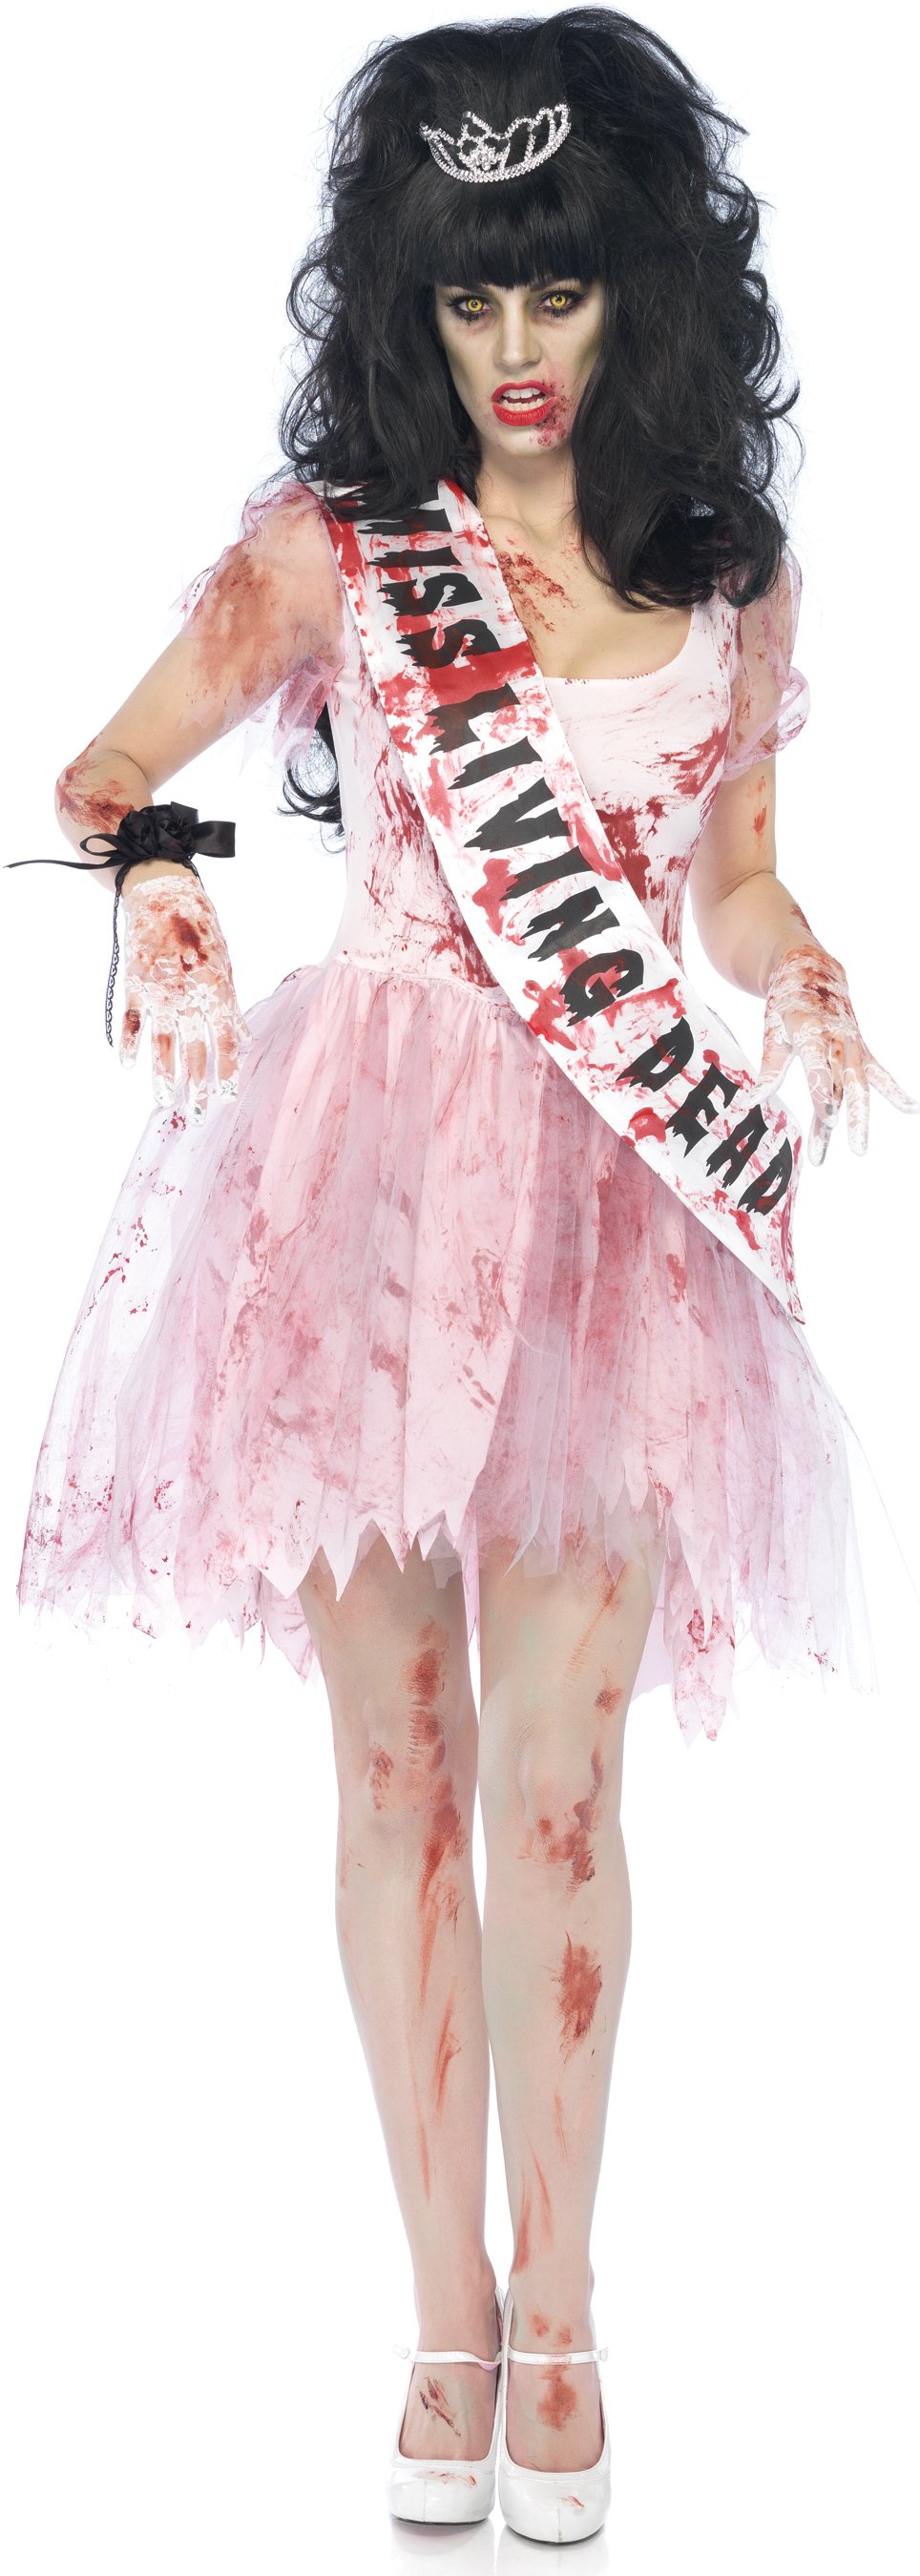 Putrid Prom Queen Adult Costume